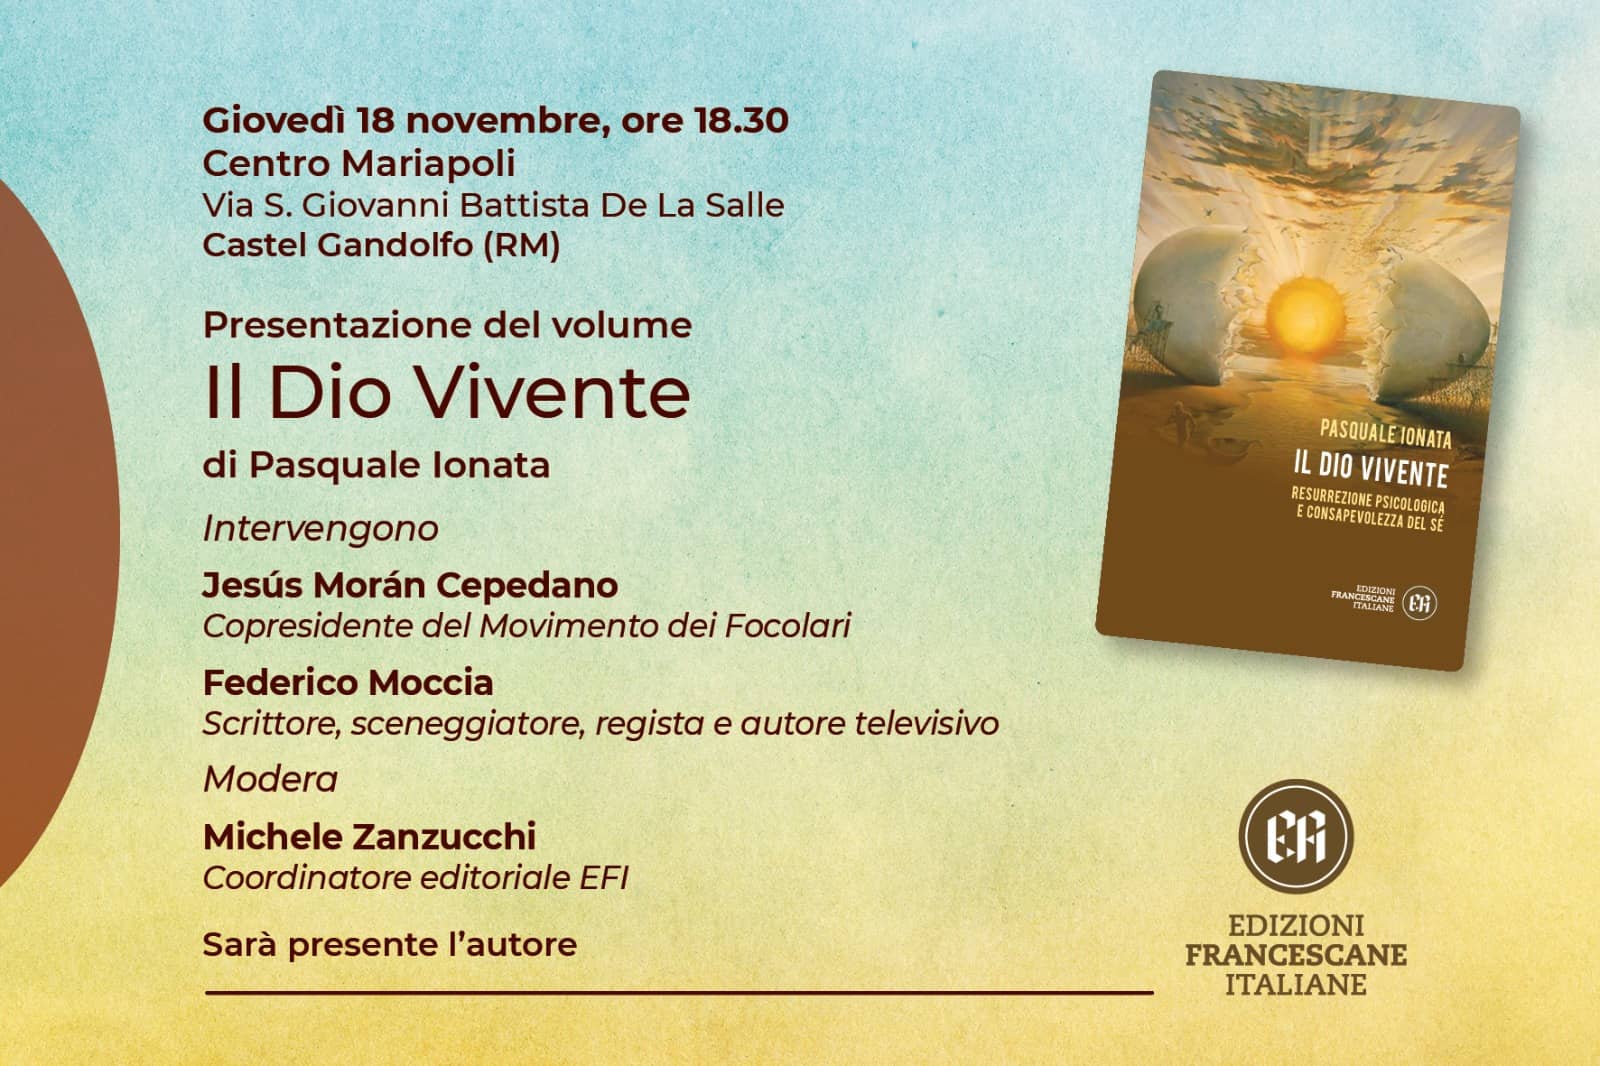 Presentazione del volume: "Il Dio vivente" di Pasquale Ionata - 18 novembre